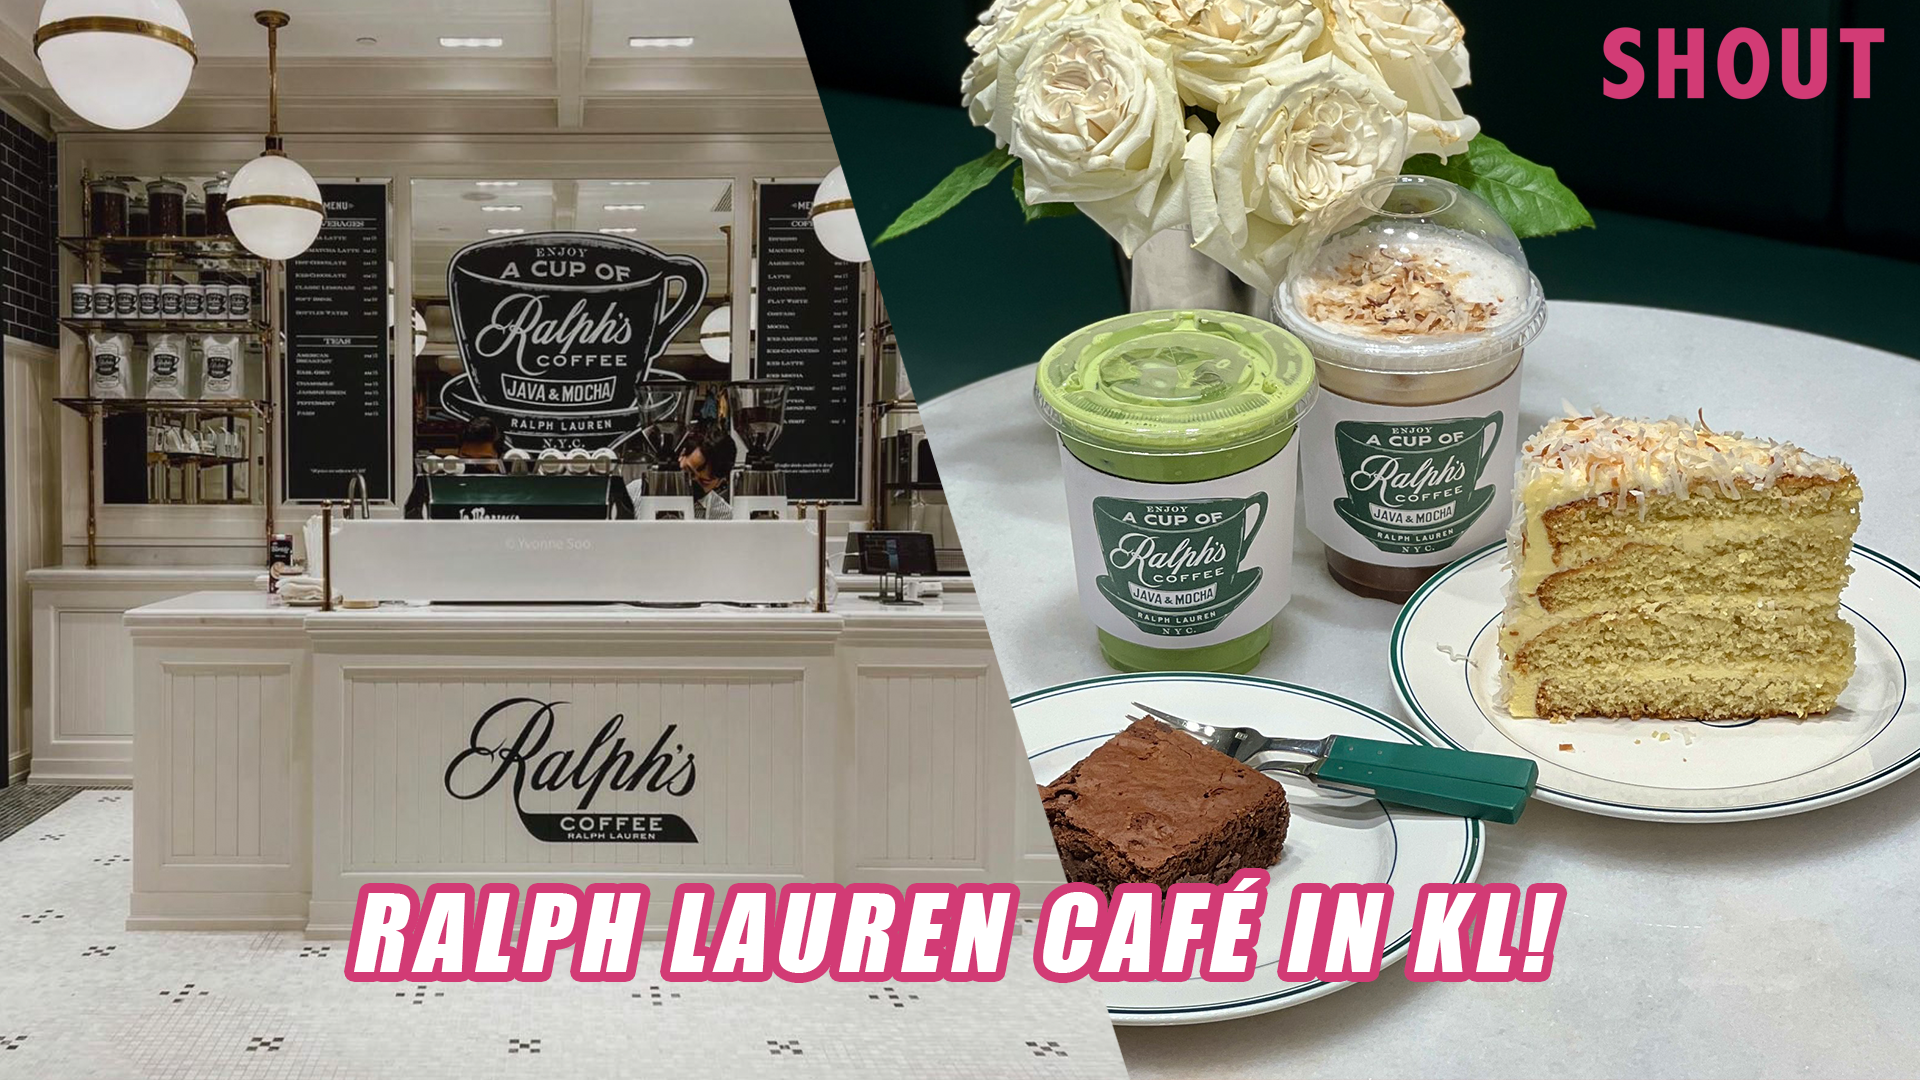 RALPH LAUREN CAFÉ OPENS AT PAVILION KUALA LUMPUR WITH EXCLUSIVE COFFEE  BREWS & MERCHANDISE! – Shout